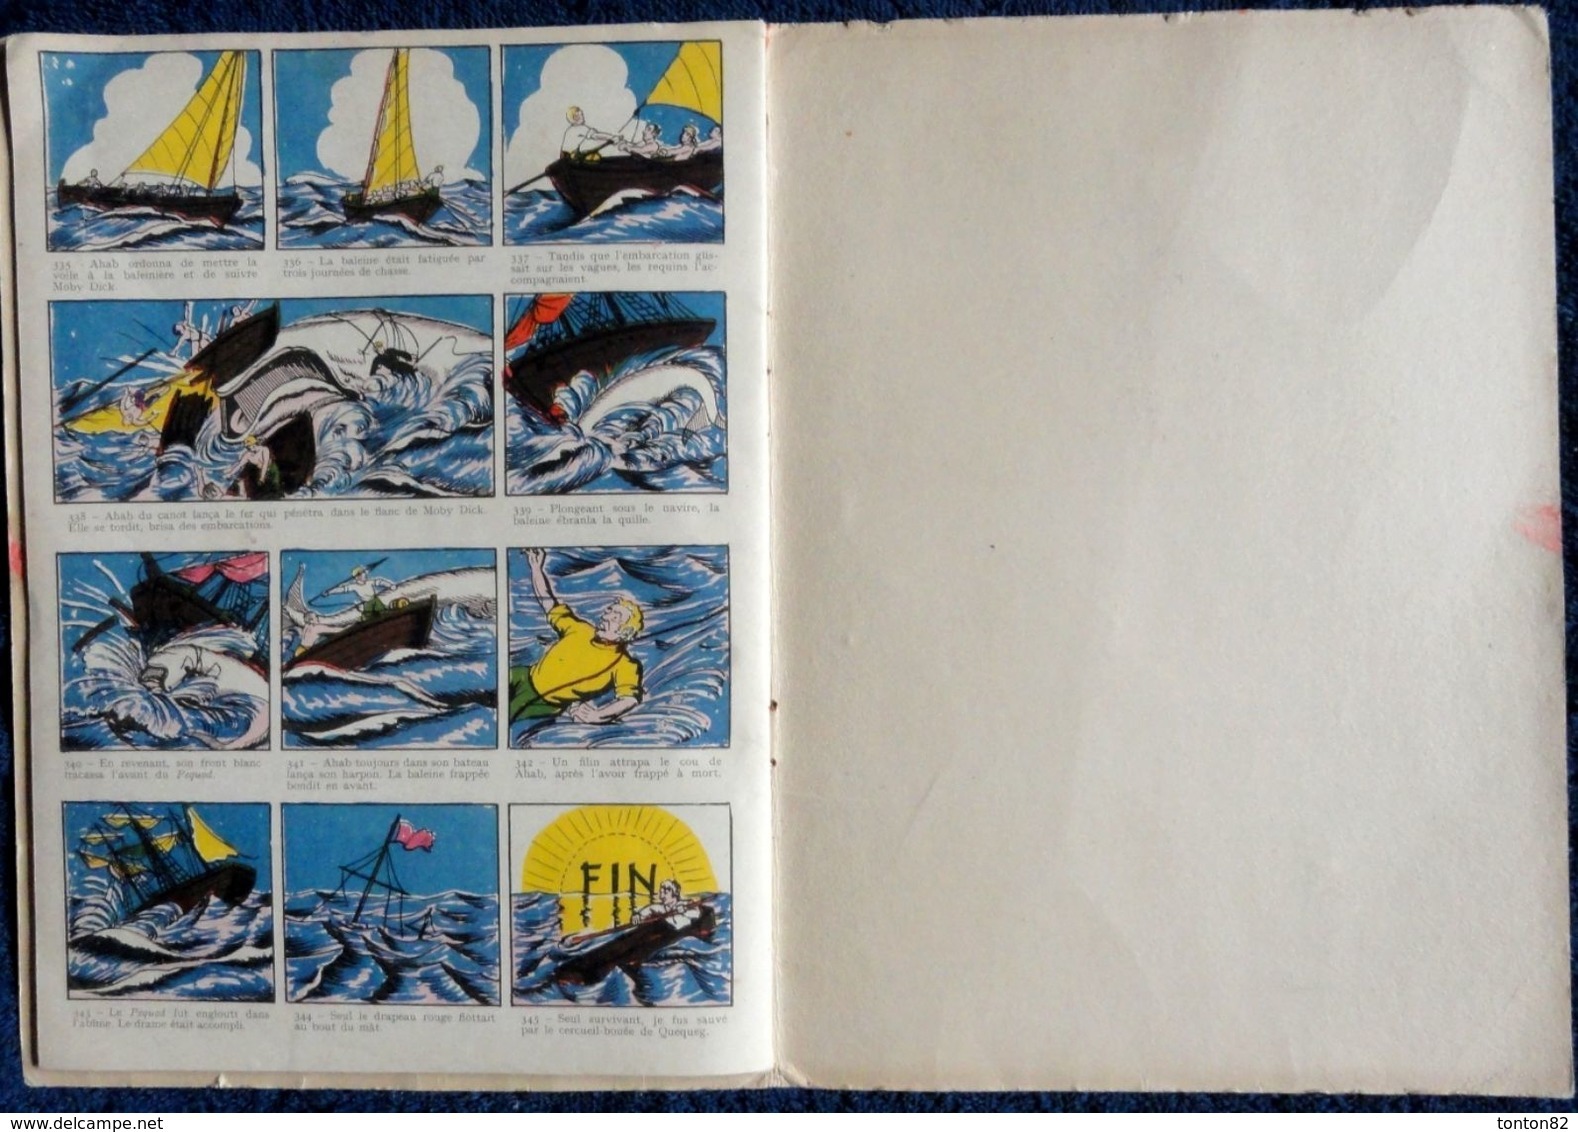 MOBY DICK - Collection " Fanfan "  N° 13 - SAM Éditions Vedette Monaco - ( 1955 ) . ( En Bandes dessinées ) .